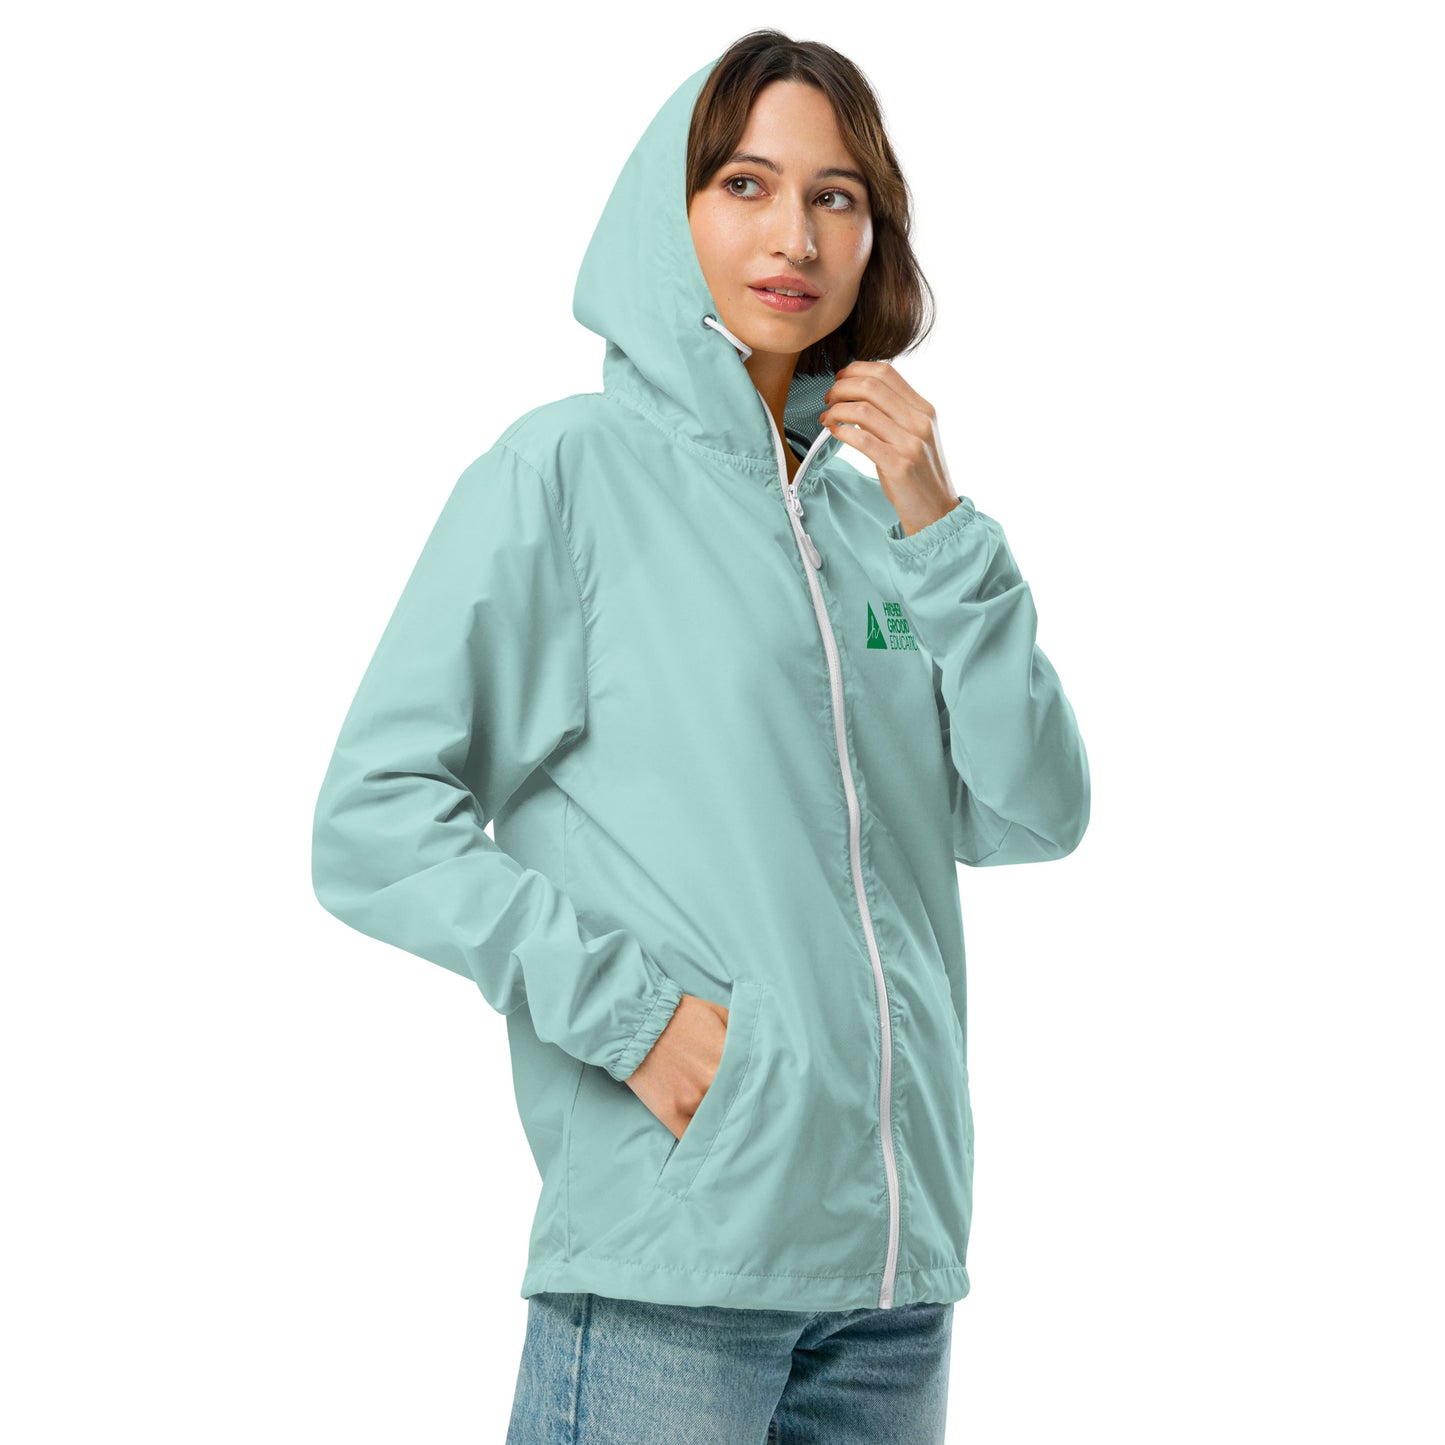 Unisex lightweight zip up windbreaker jacket